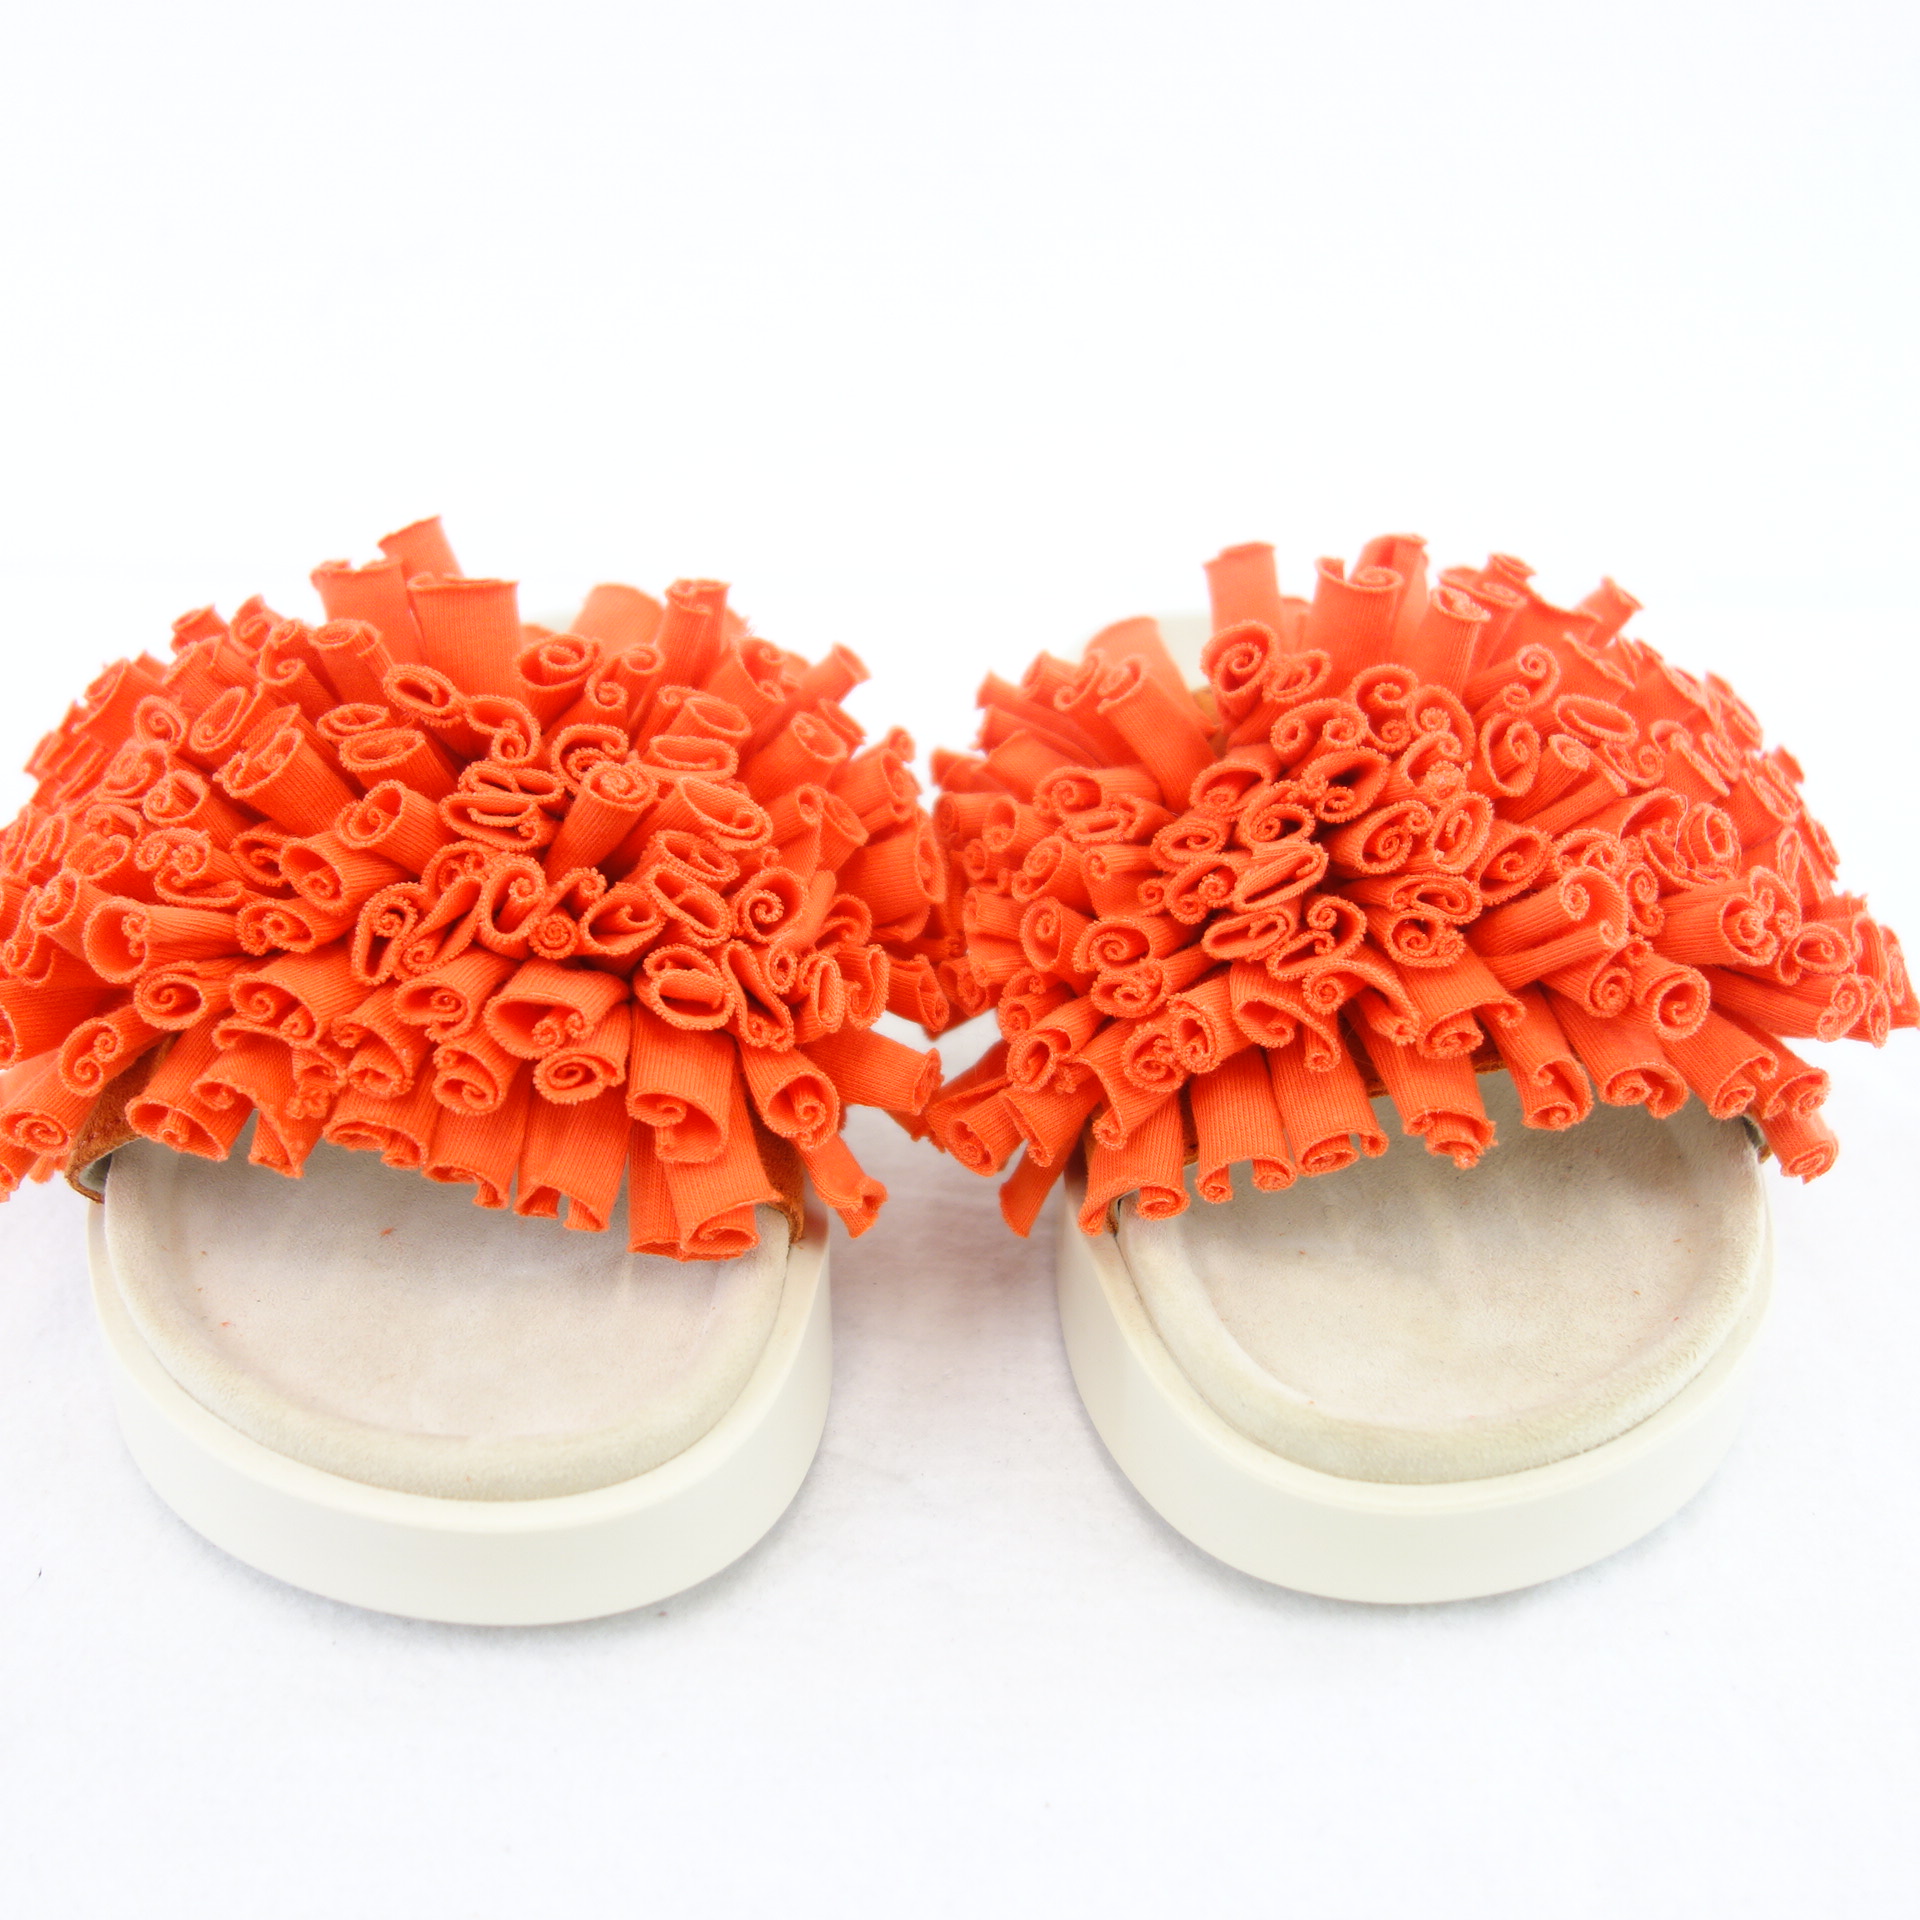 INUIKII Flache Damen Schuhe Fußbett Sandalen Slipper Rot 37 Stoff Jersey Coral 